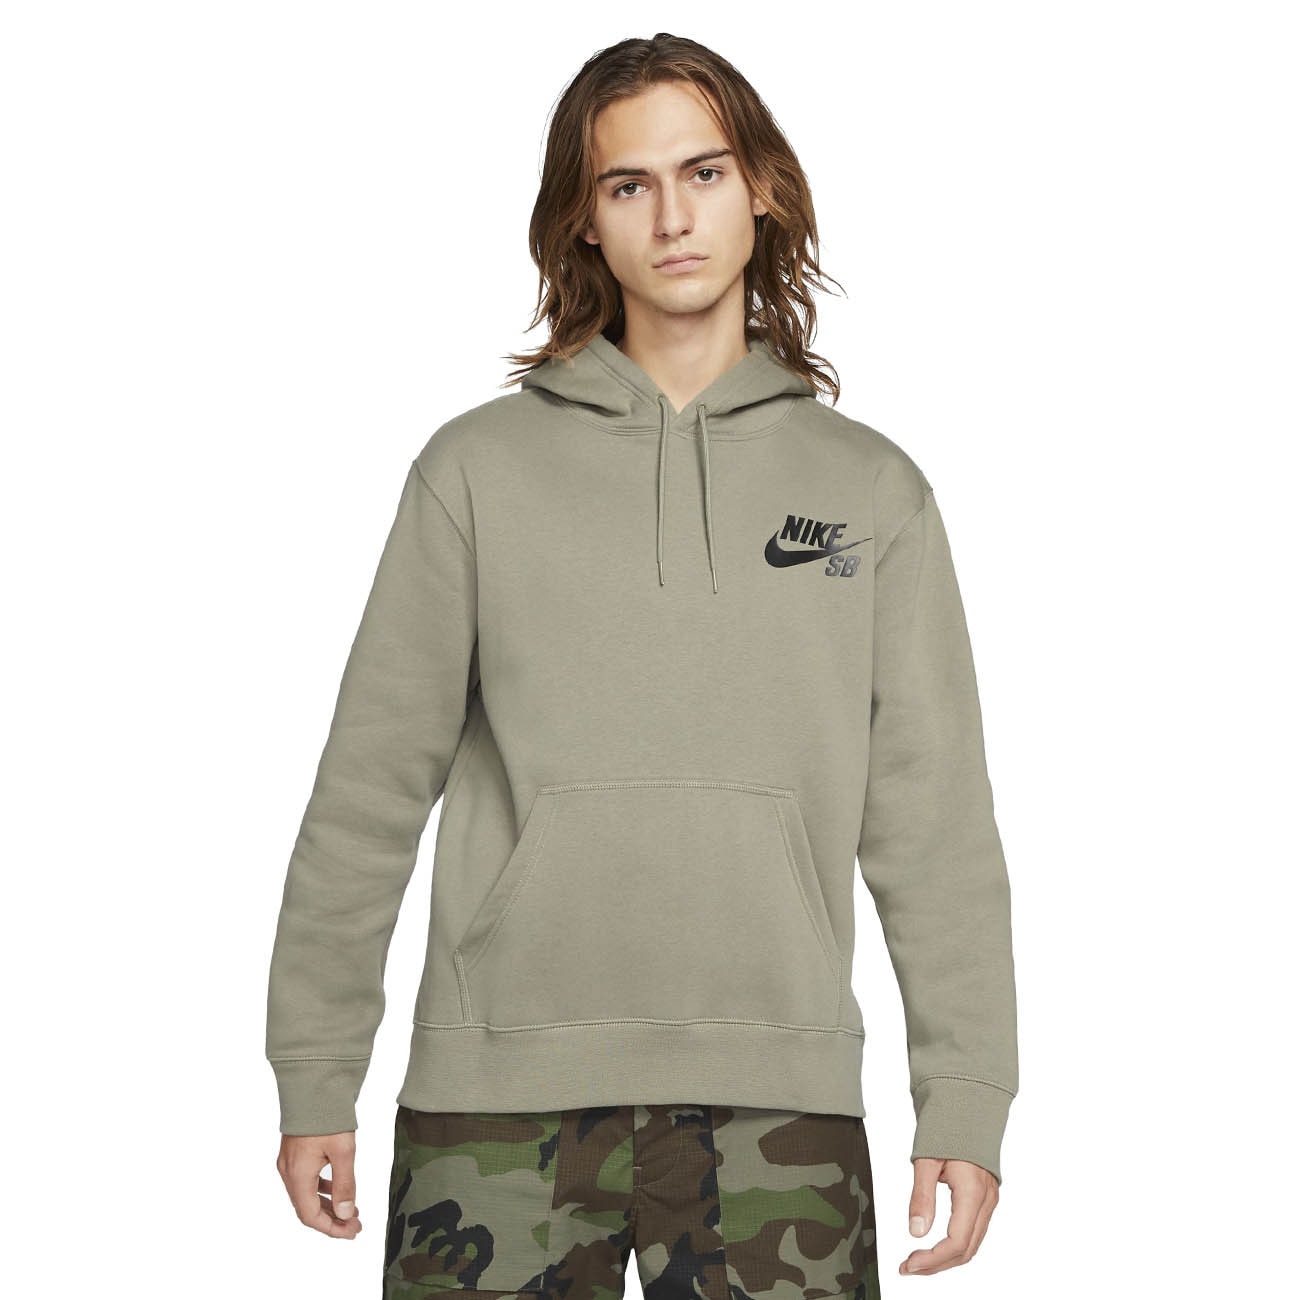 nike army hoodie